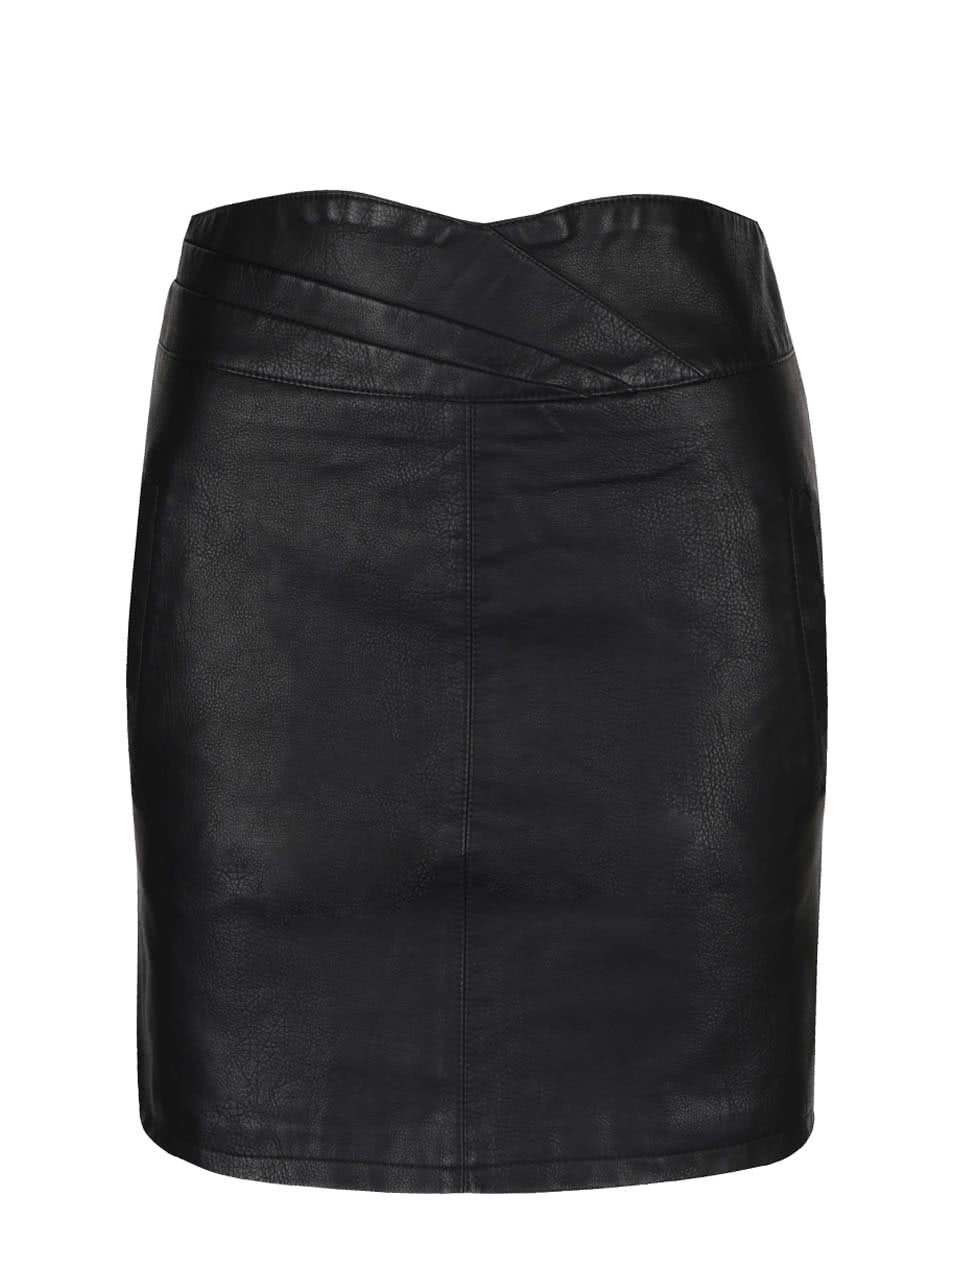 Černá koženková minisukně s kapsami Vero Moda Connery